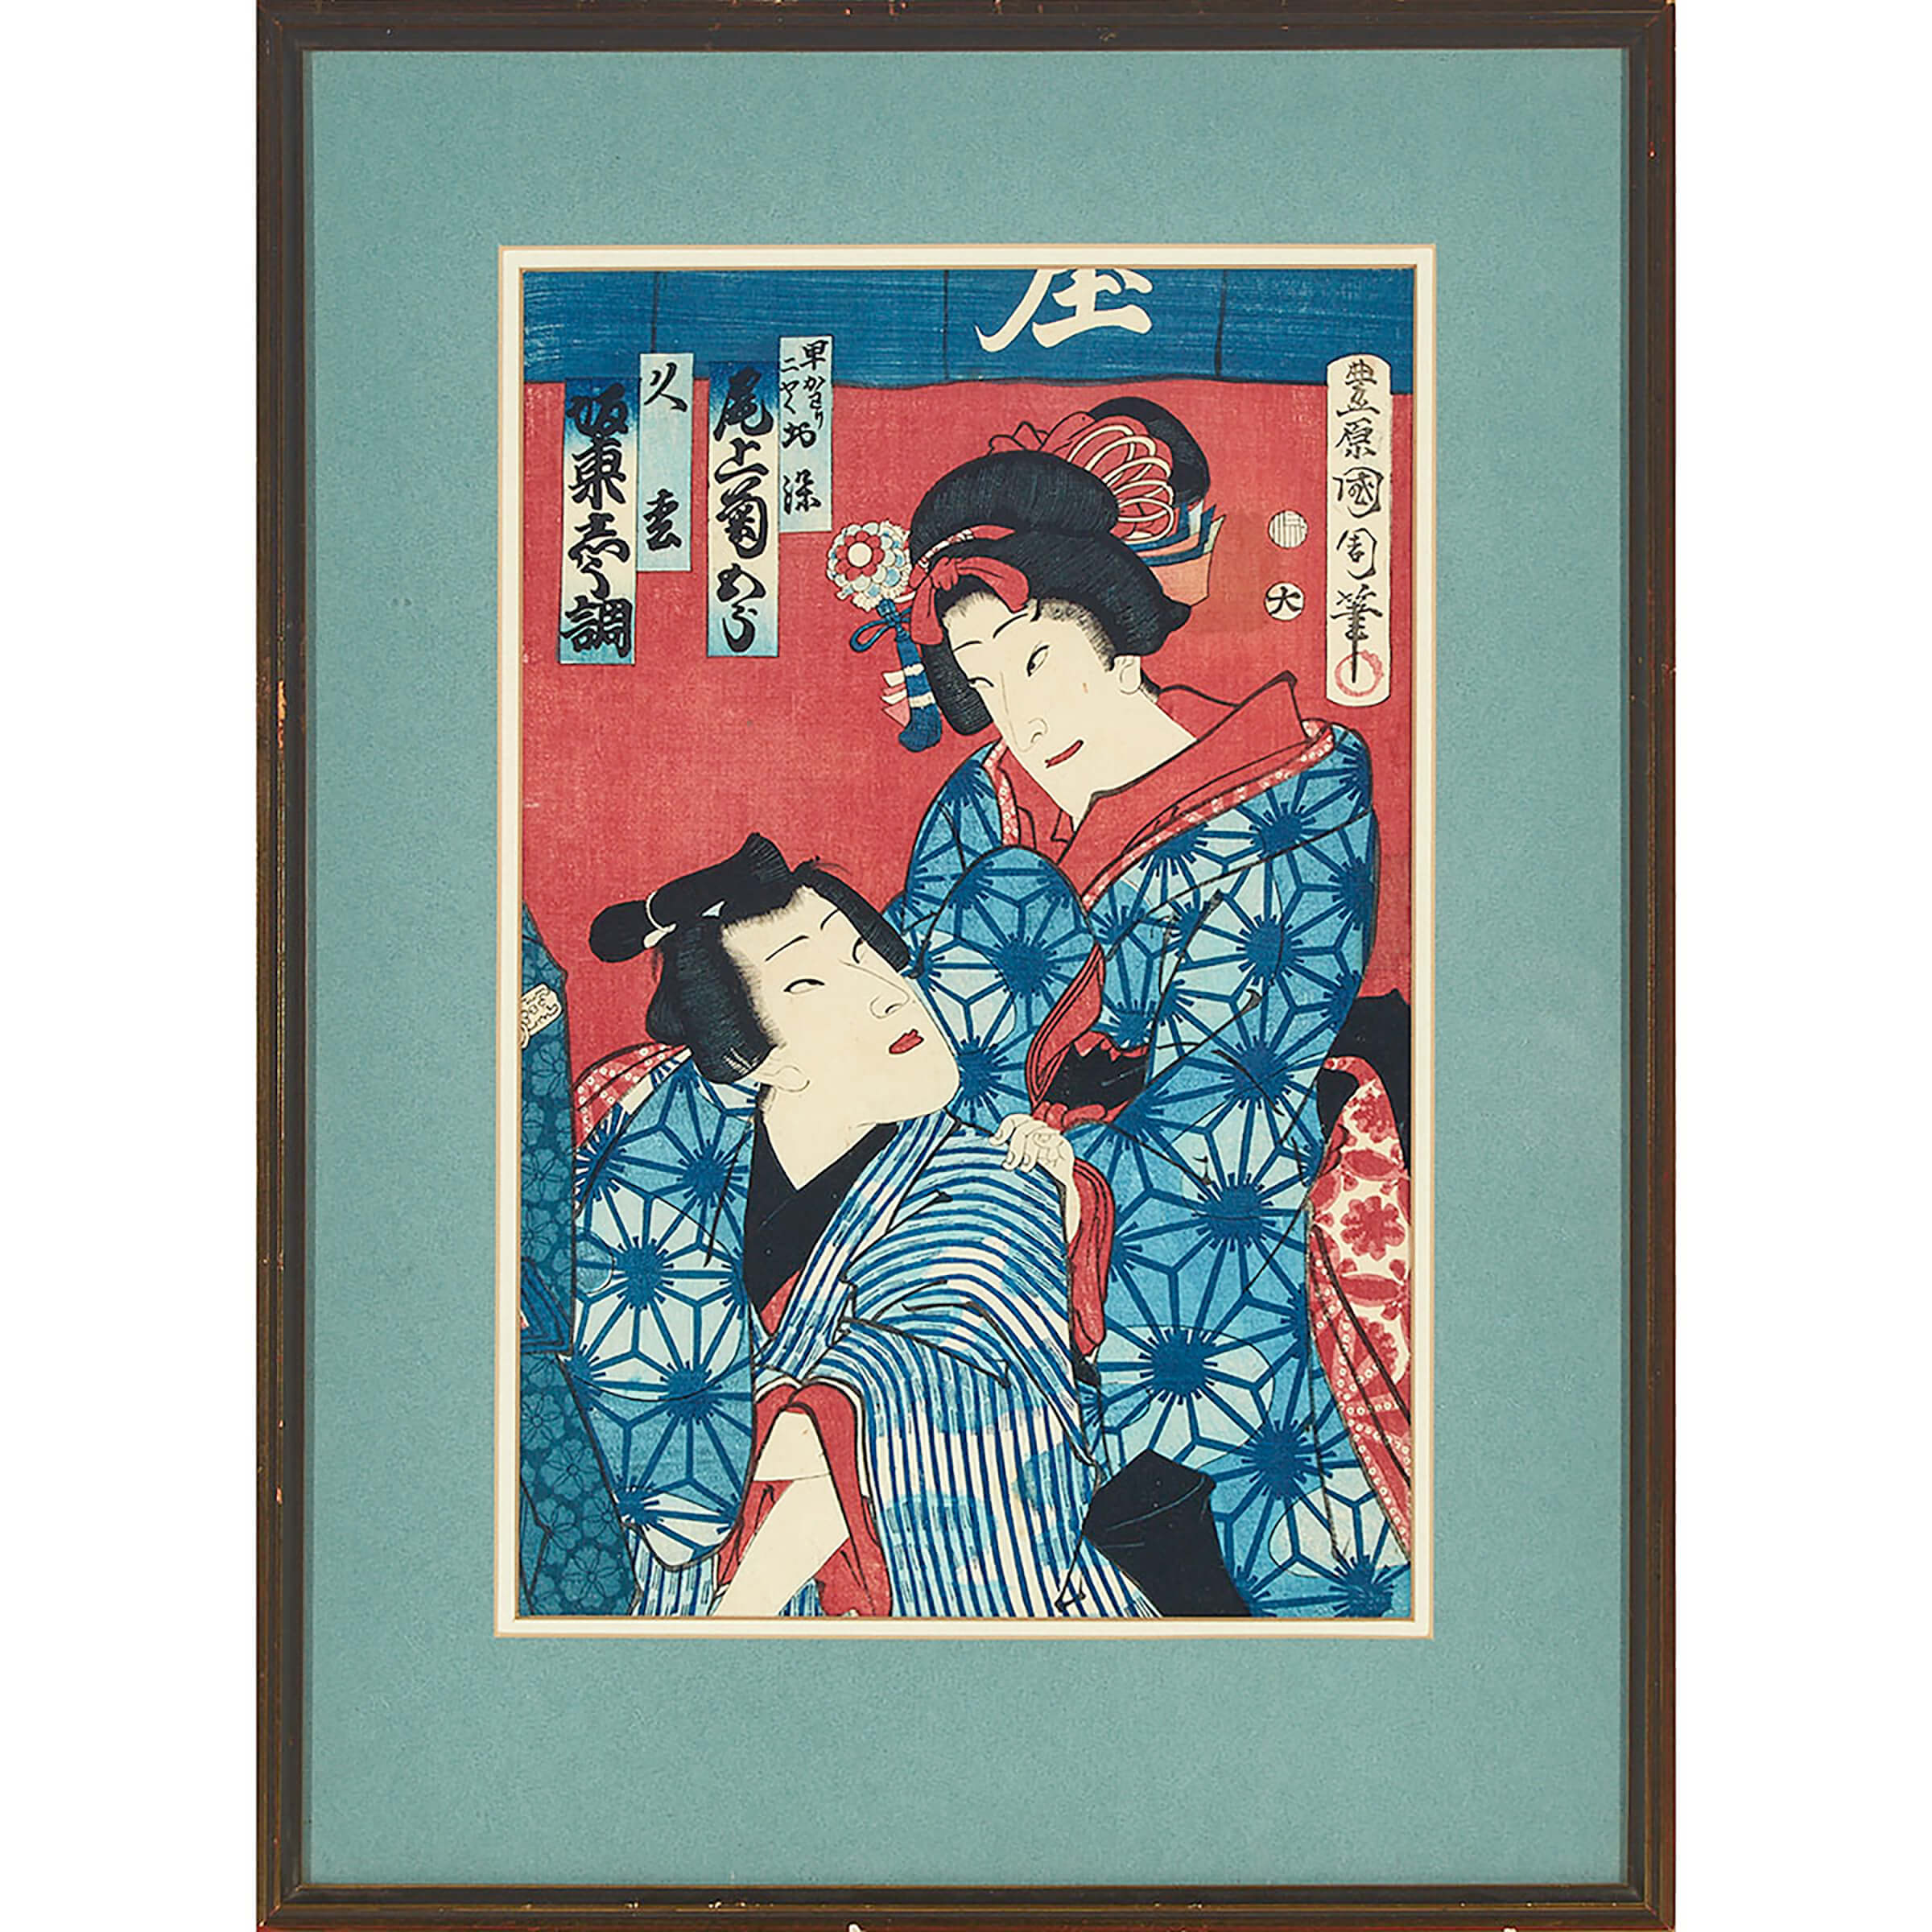 Two Actor Portraits by Toyohara Kunichika (1835-1900) and Utagawa Kunisada (1786-1865)